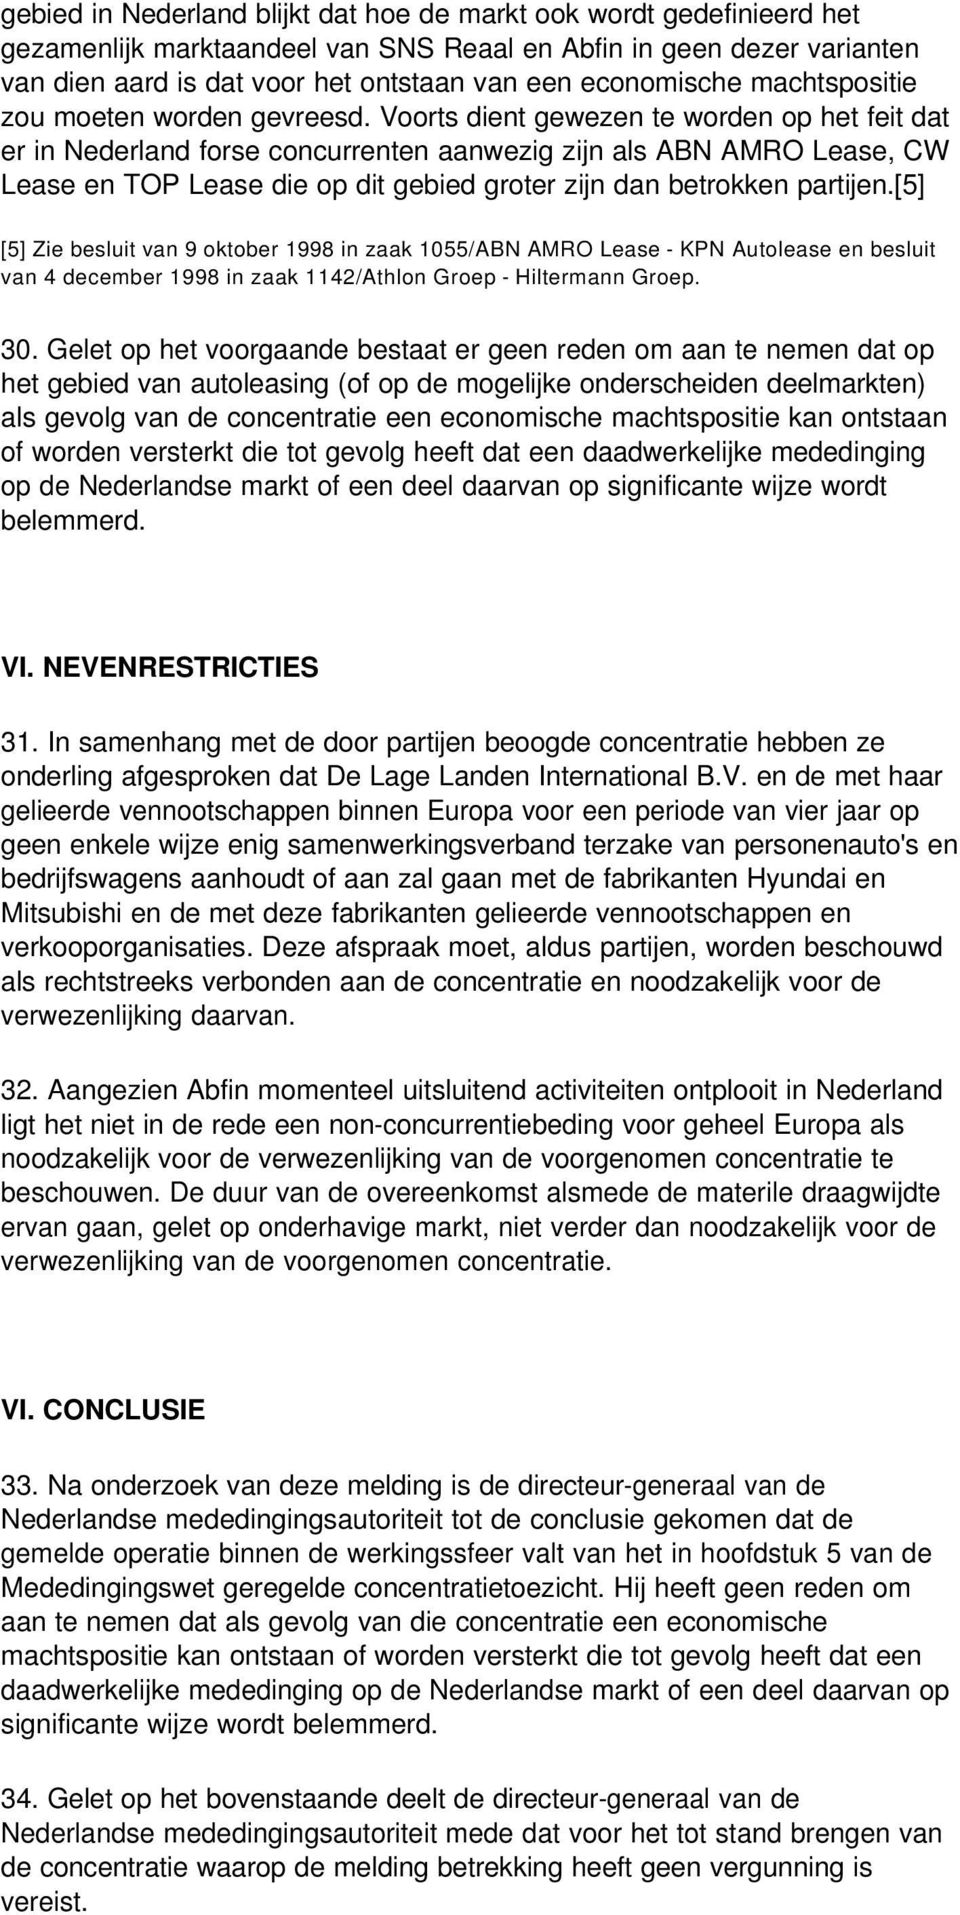 Voorts dient gewezen te worden op het feit dat er in Nederland forse concurrenten aanwezig zijn als ABN AMRO Lease, CW Lease en TOP Lease die op dit gebied groter zijn dan betrokken partijen.